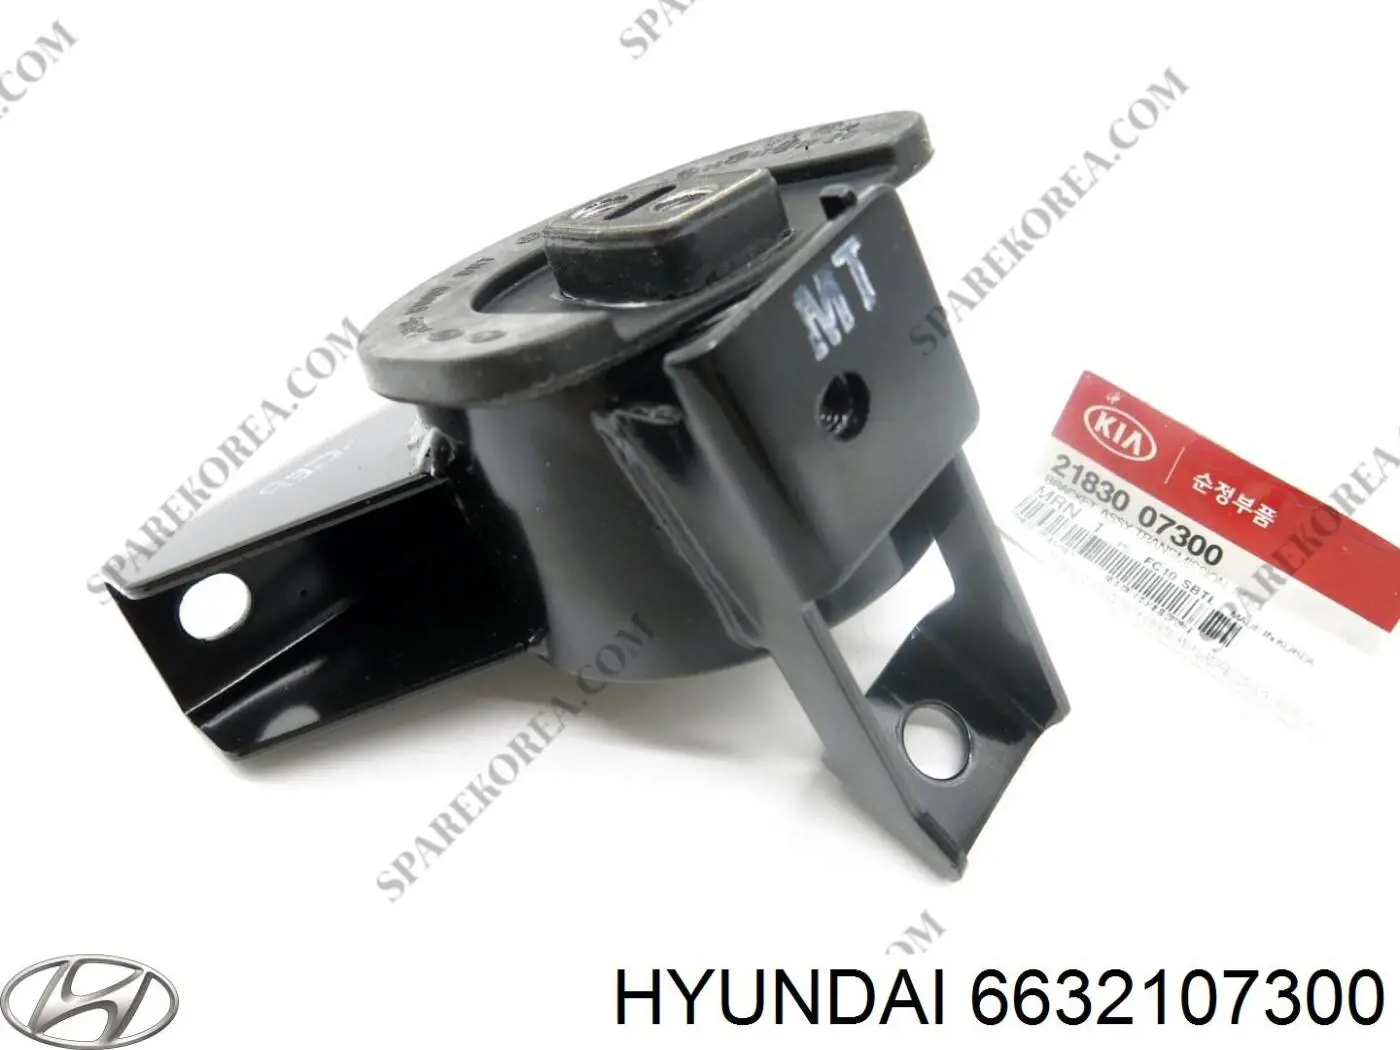 6632107330 Hyundai/Kia guardabarros delantero derecho